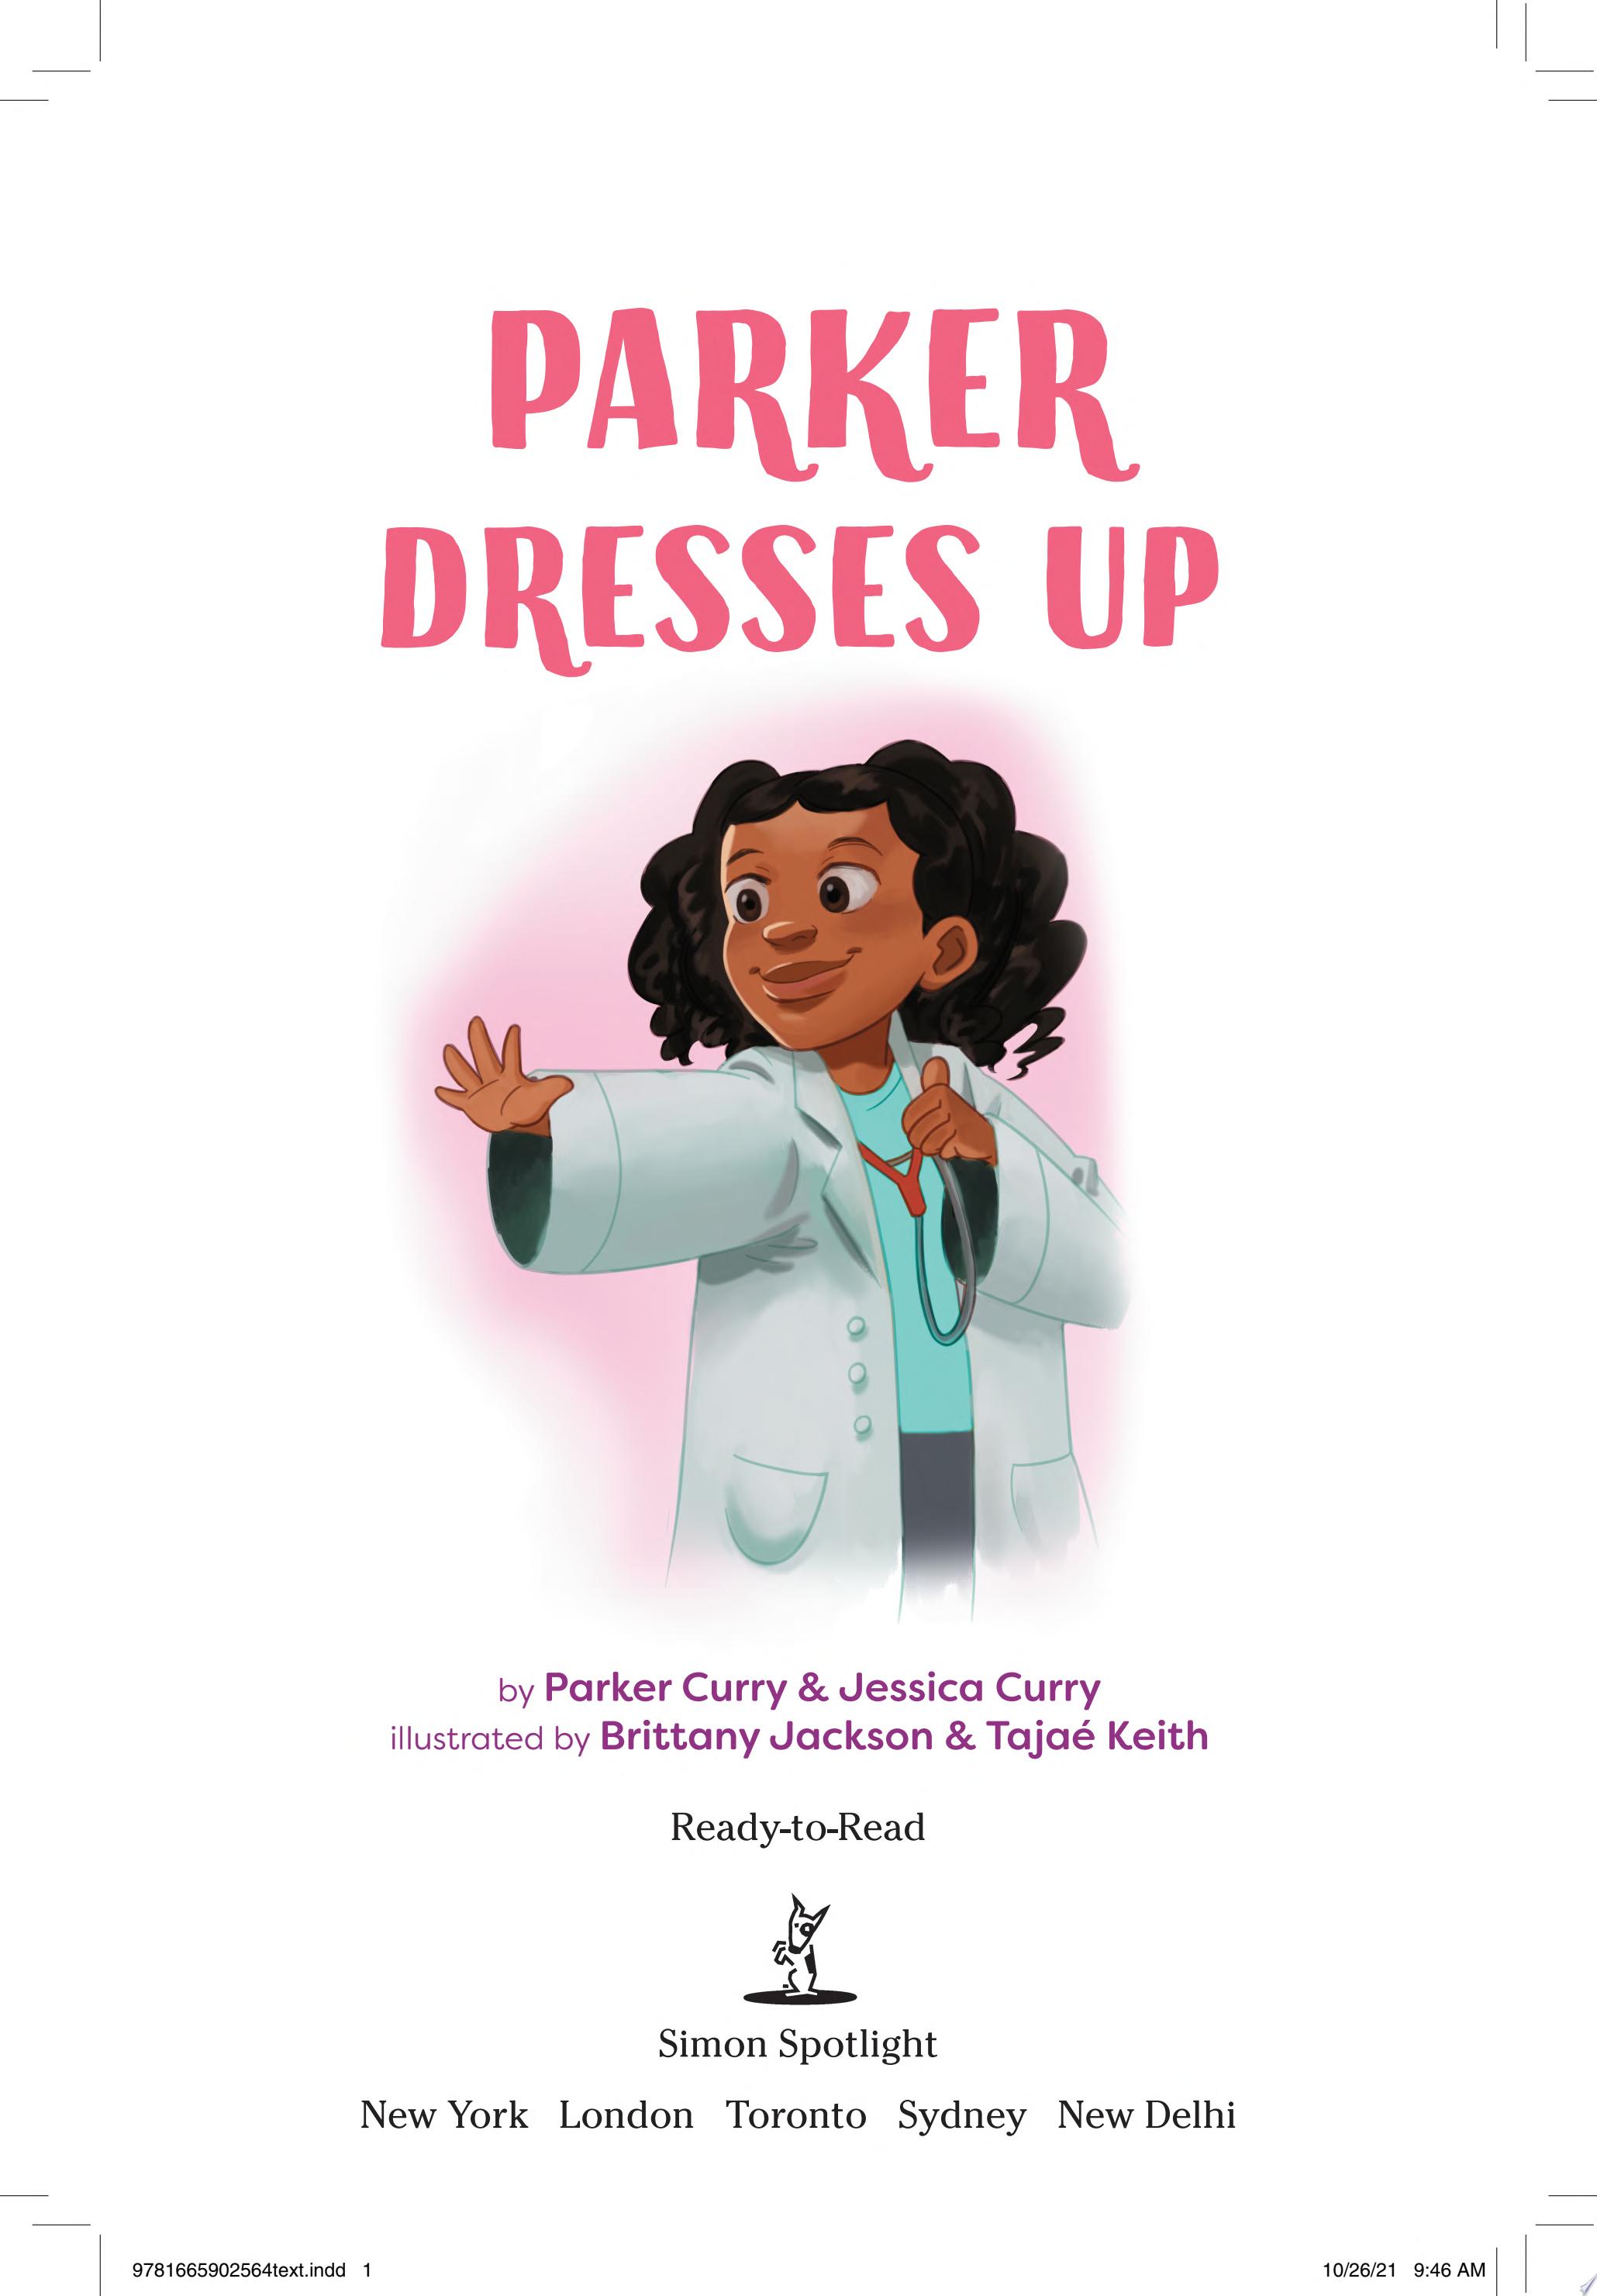 Image for "Parker Dresses Up"